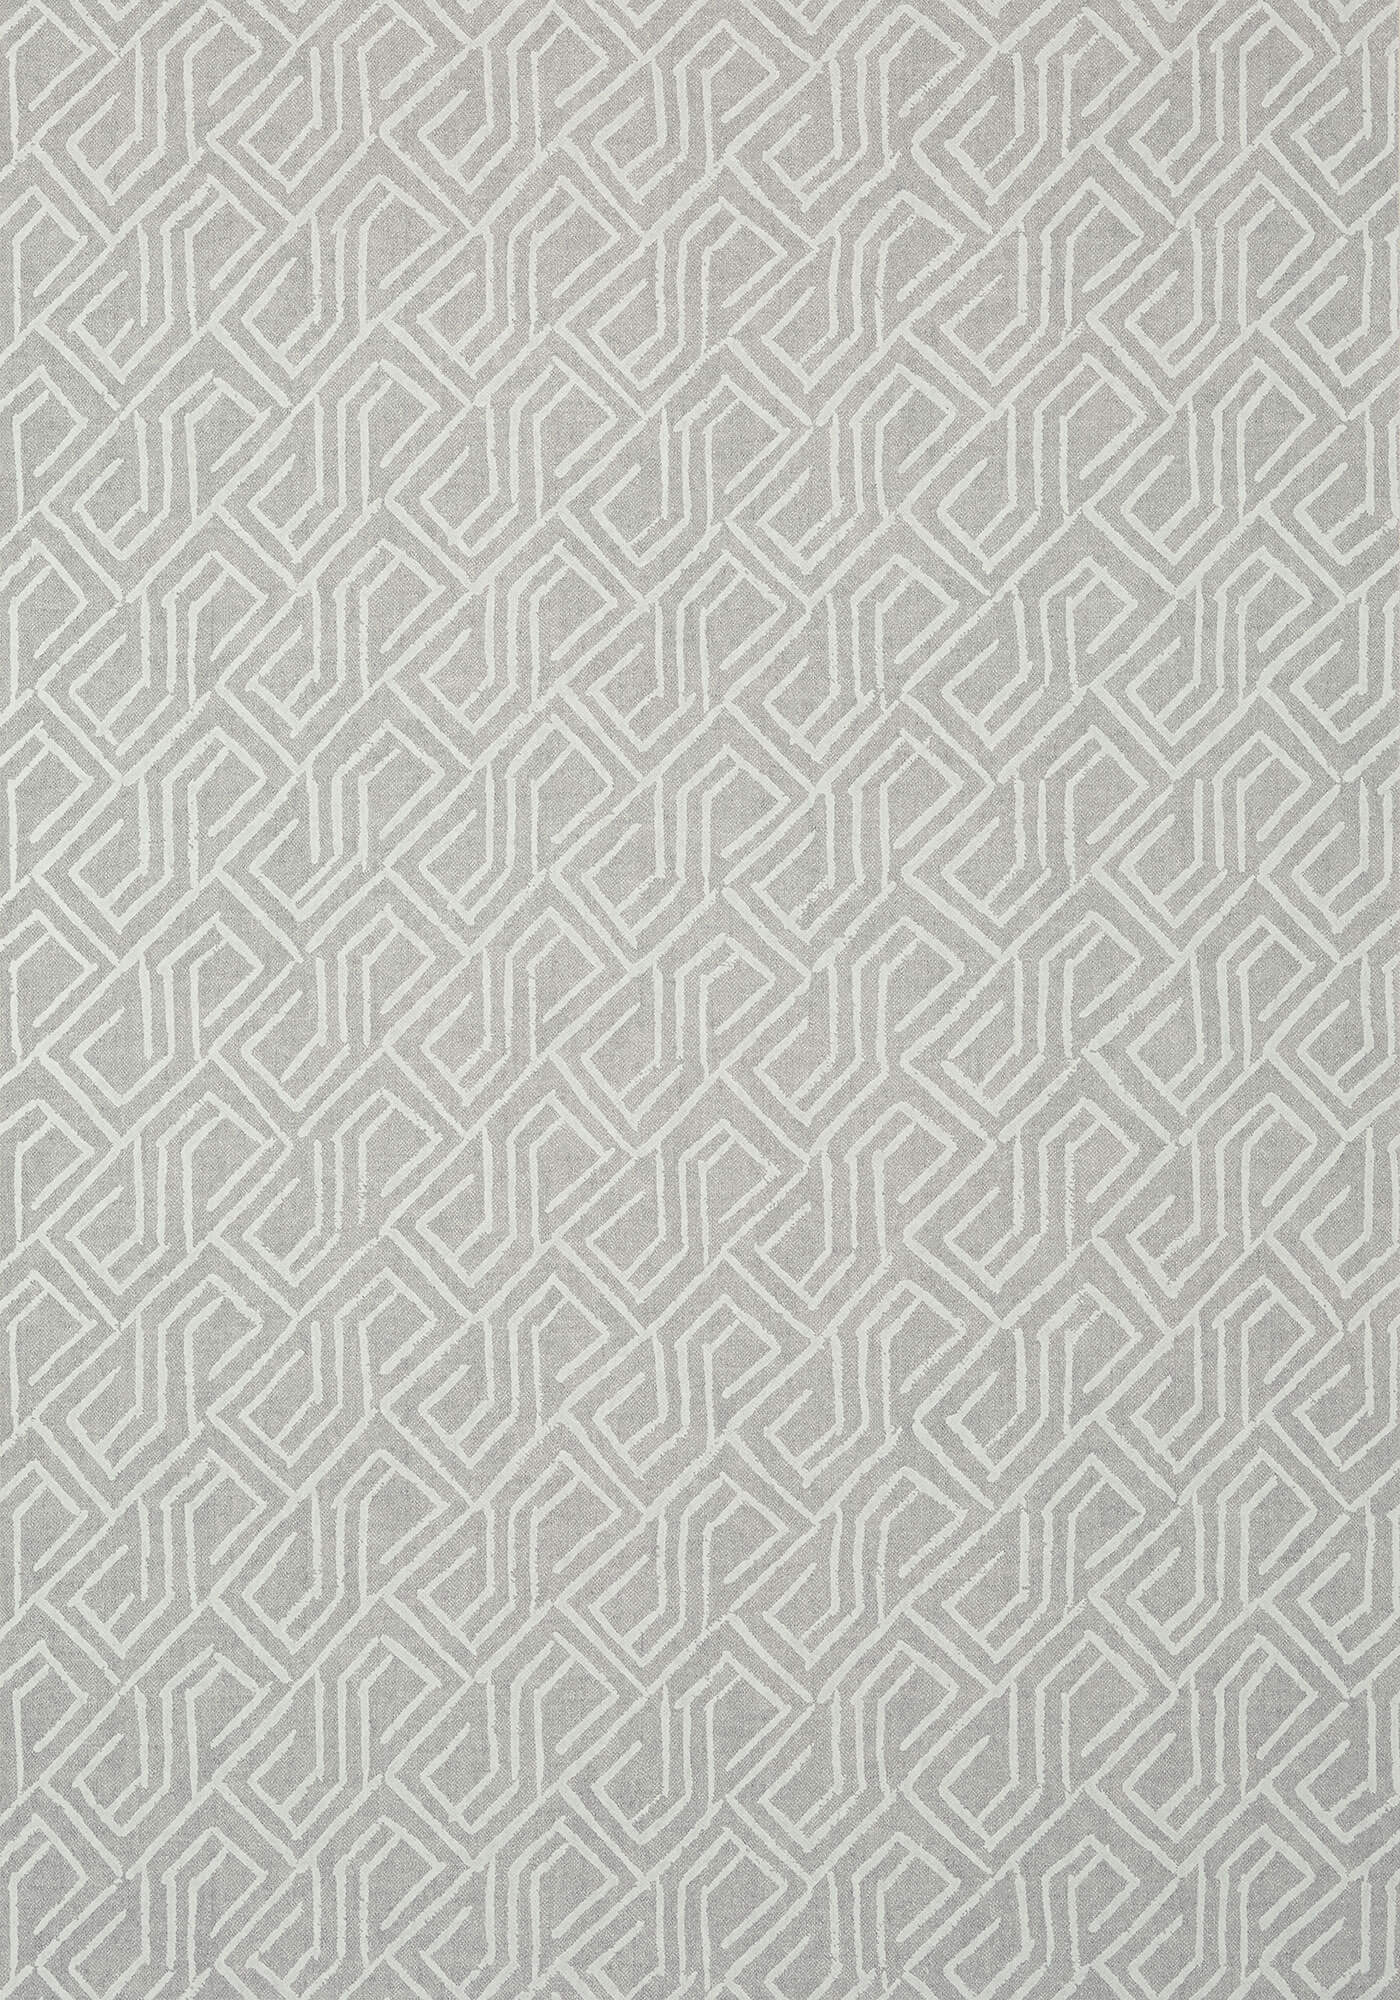 Thibaut Modern Resource 3 Tortona Wallpaper - Gray